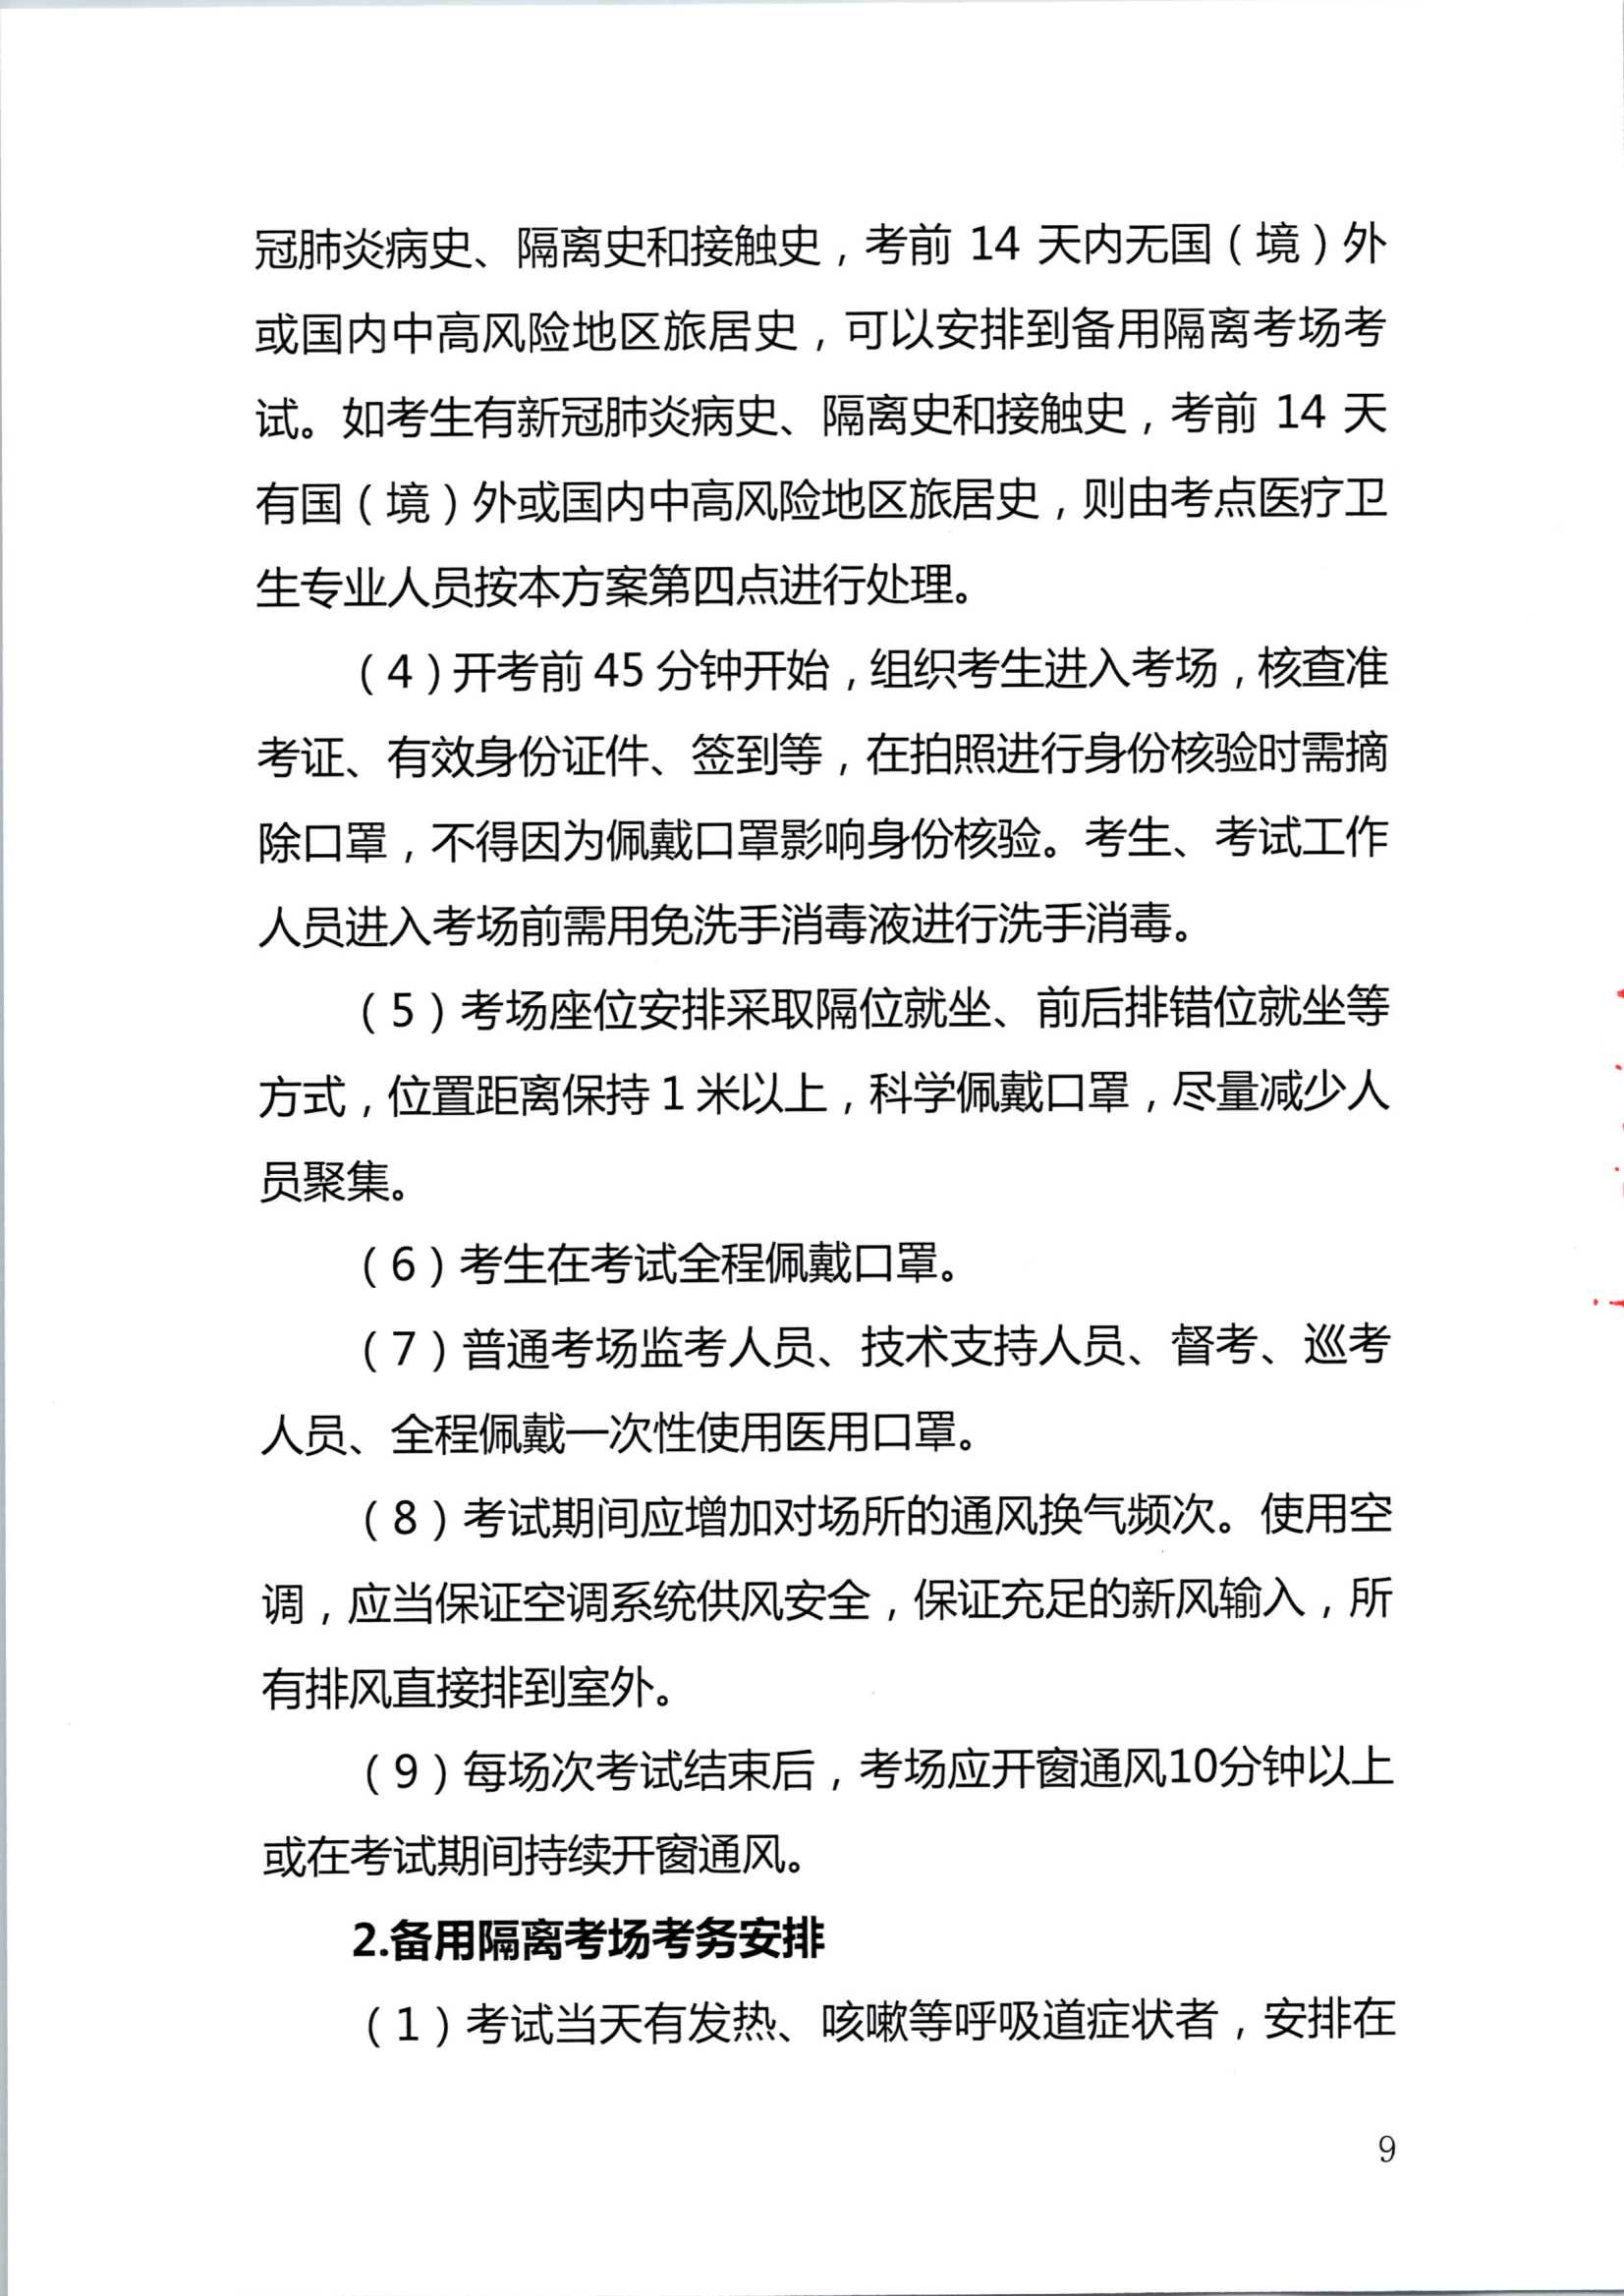 2020注册会计师全国统一考试深圳考区疫情防控工作方案_9.Png